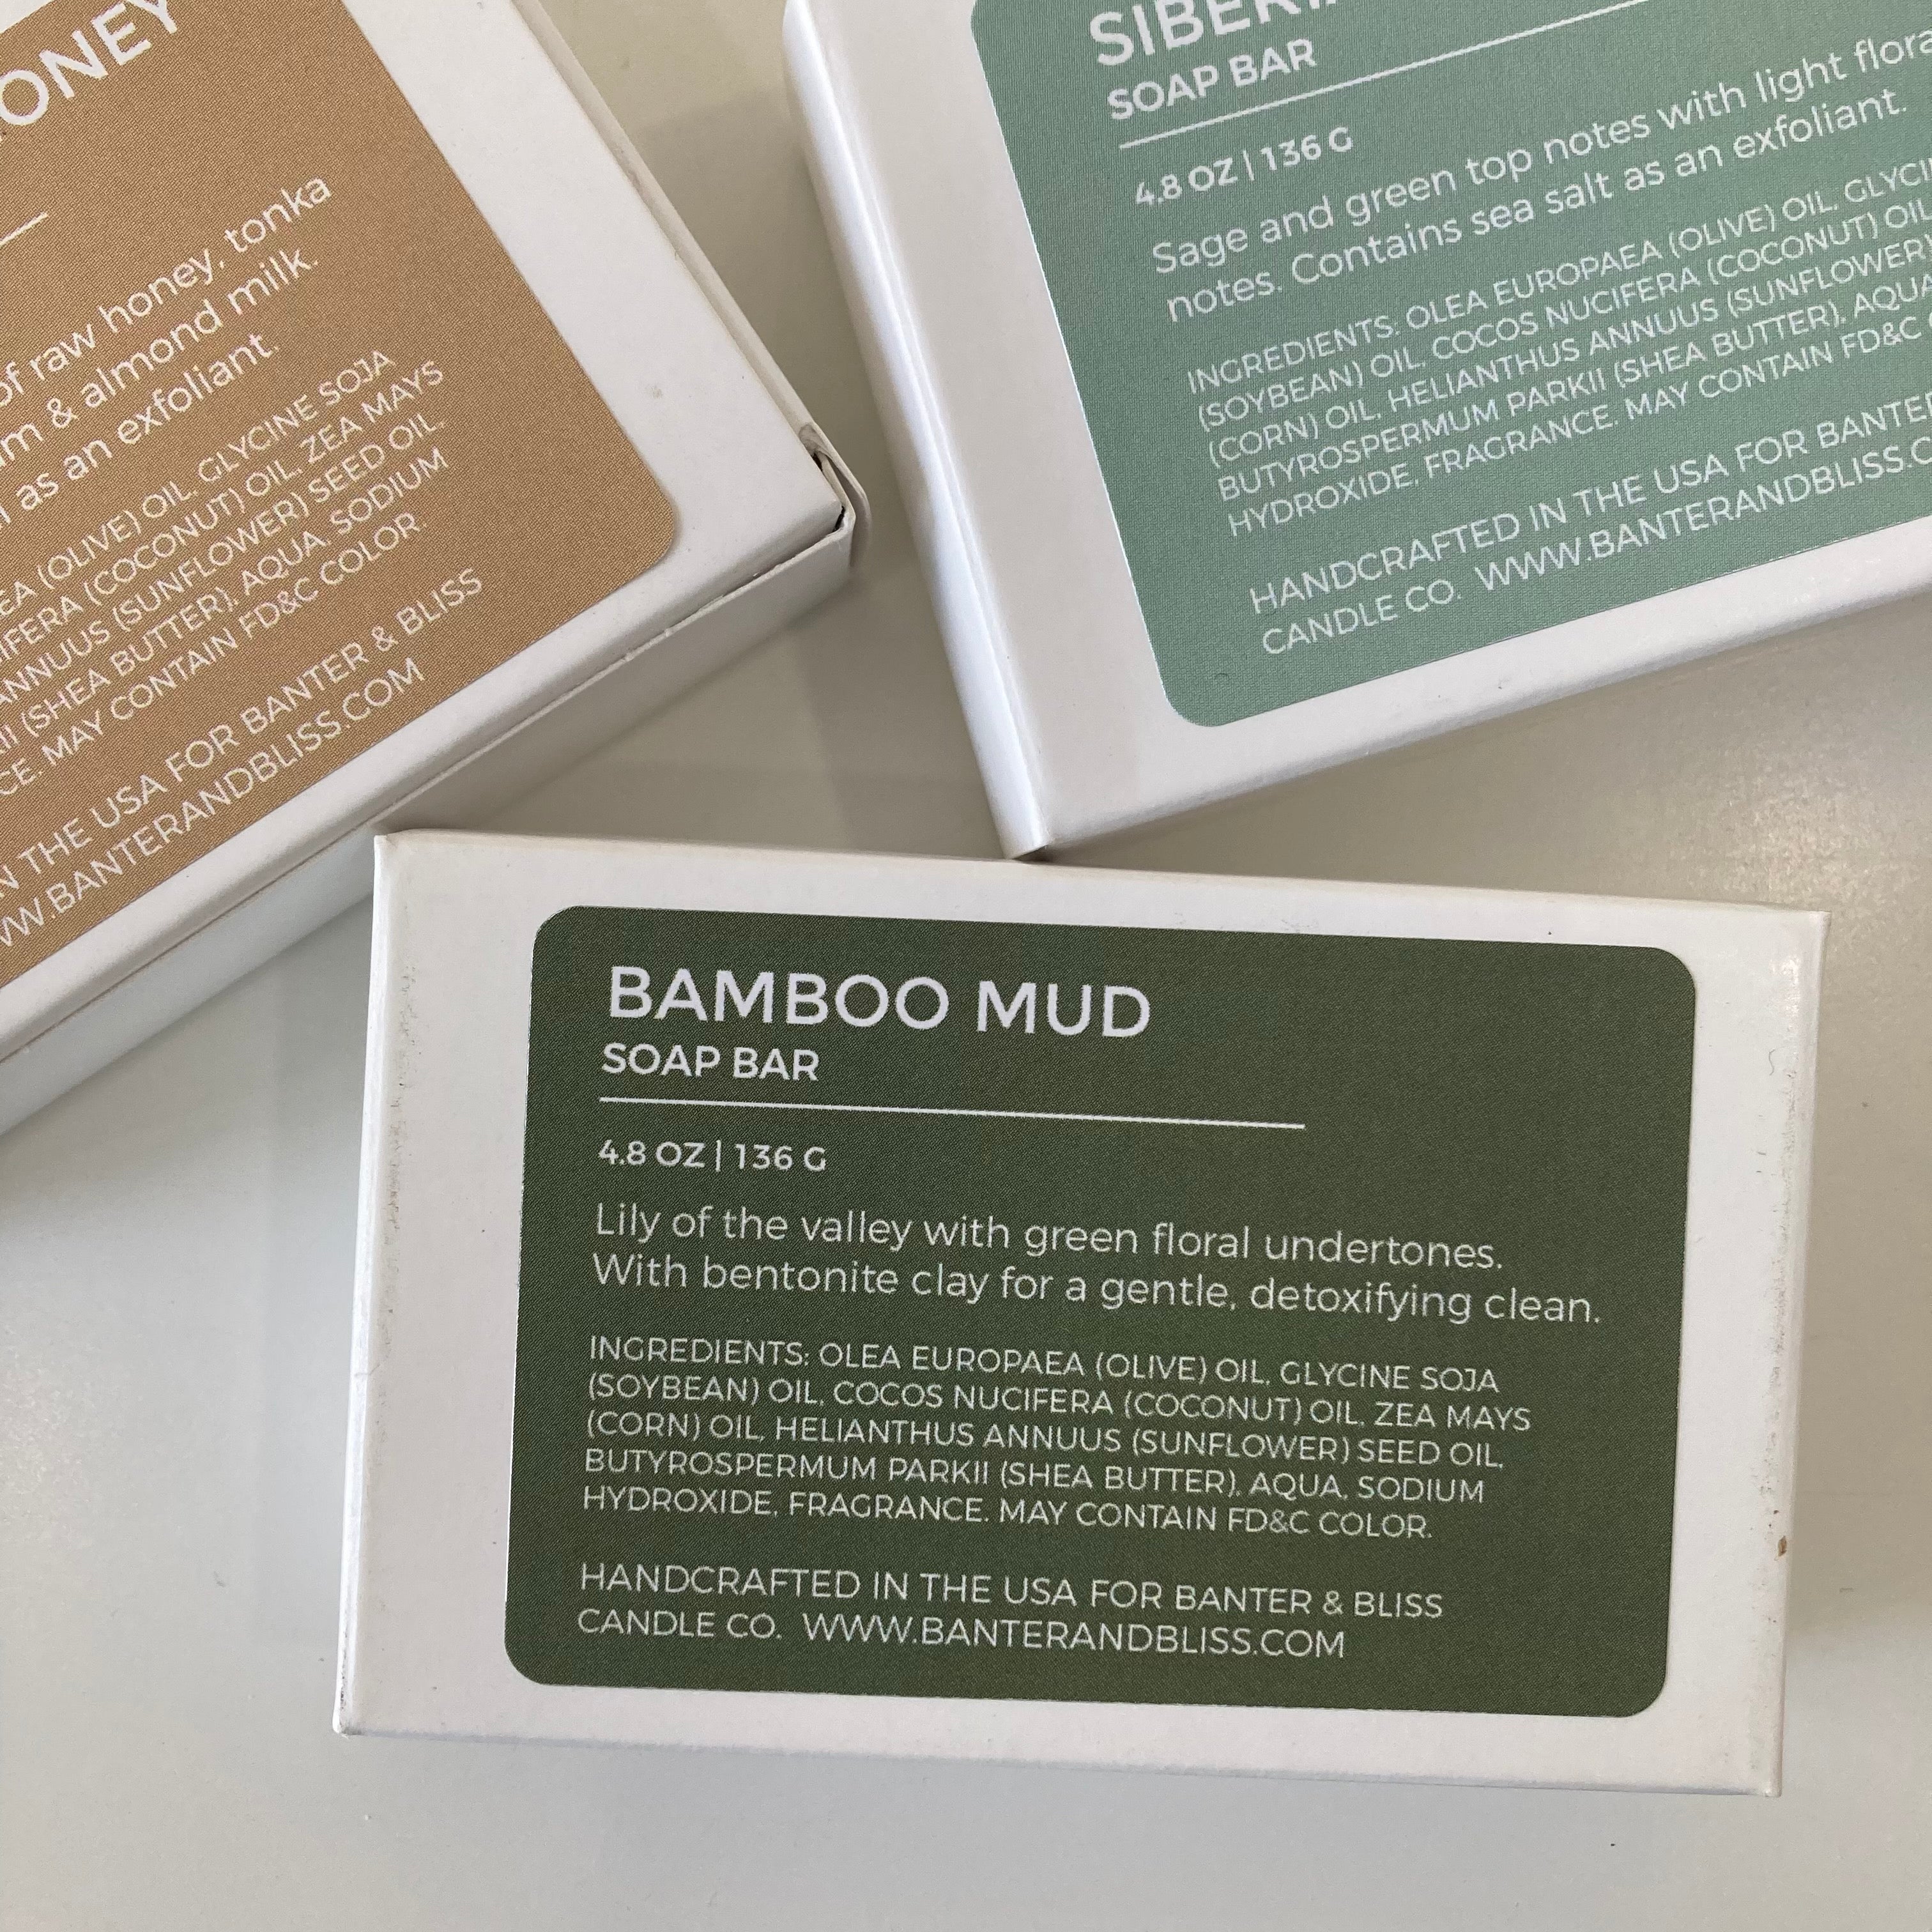 BAMBOO MUD. Cold Process Soap Bar.